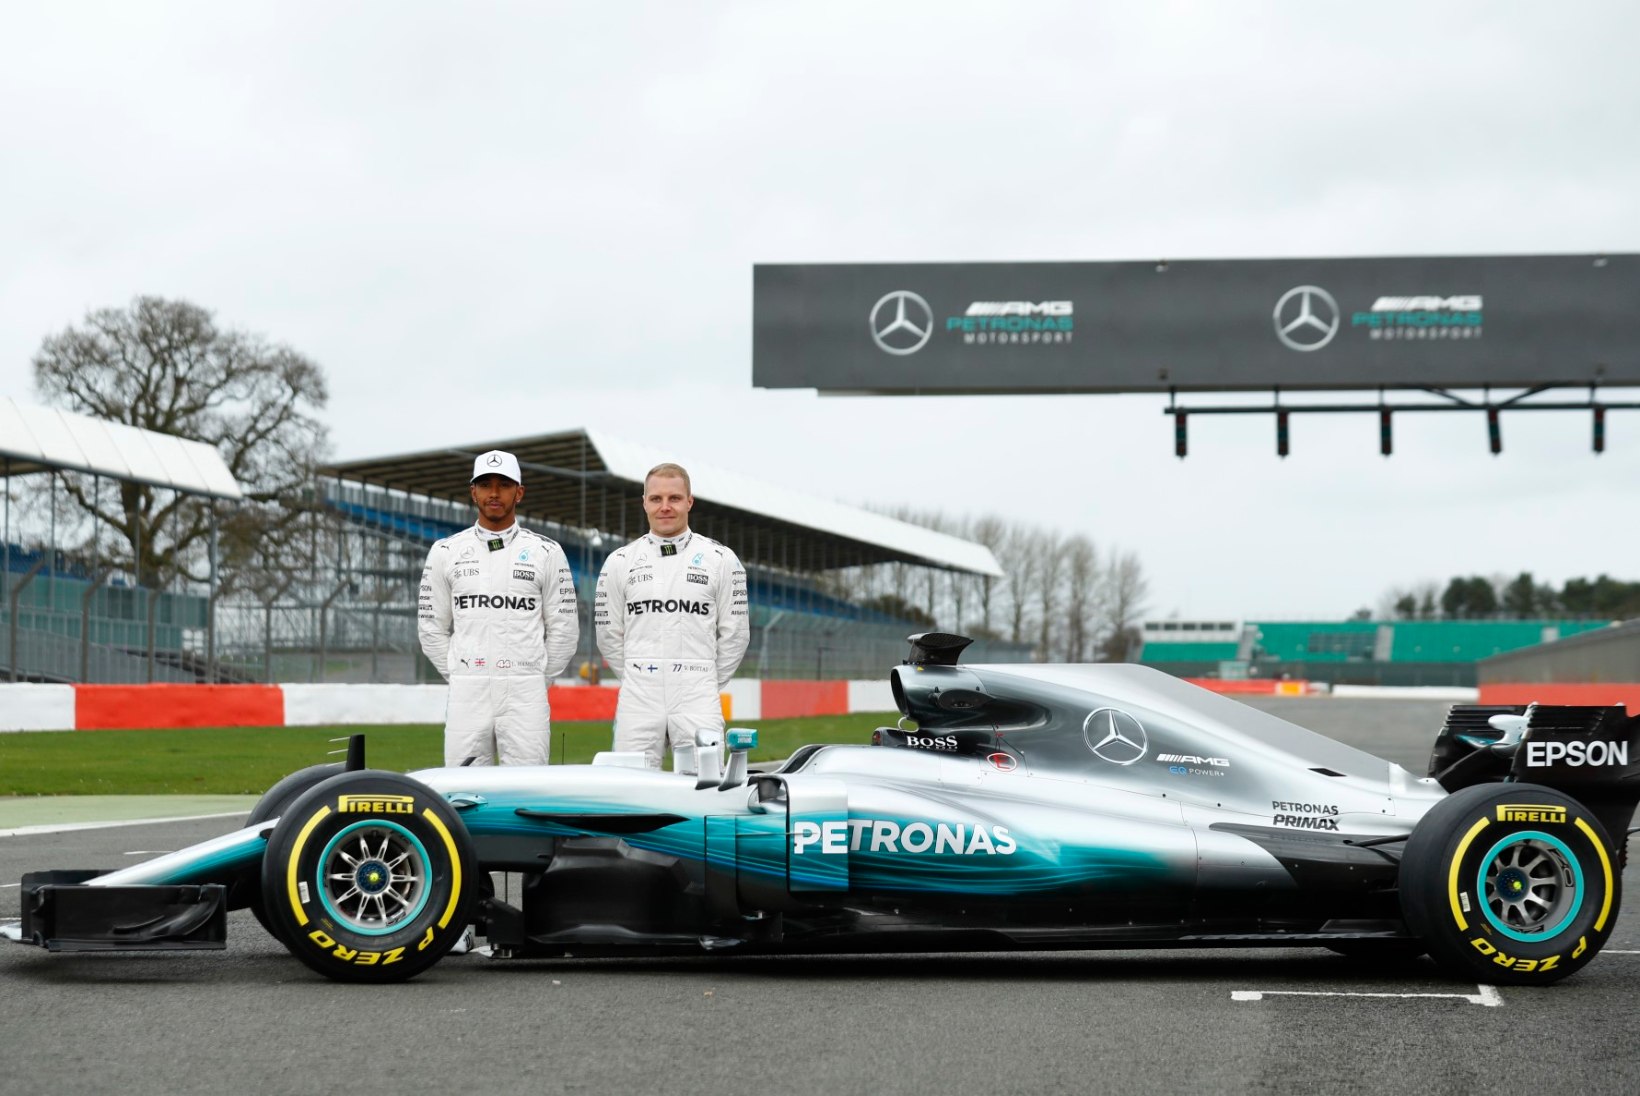 FOTOD | Mercedes ajas uue vormeli garaažist välja!